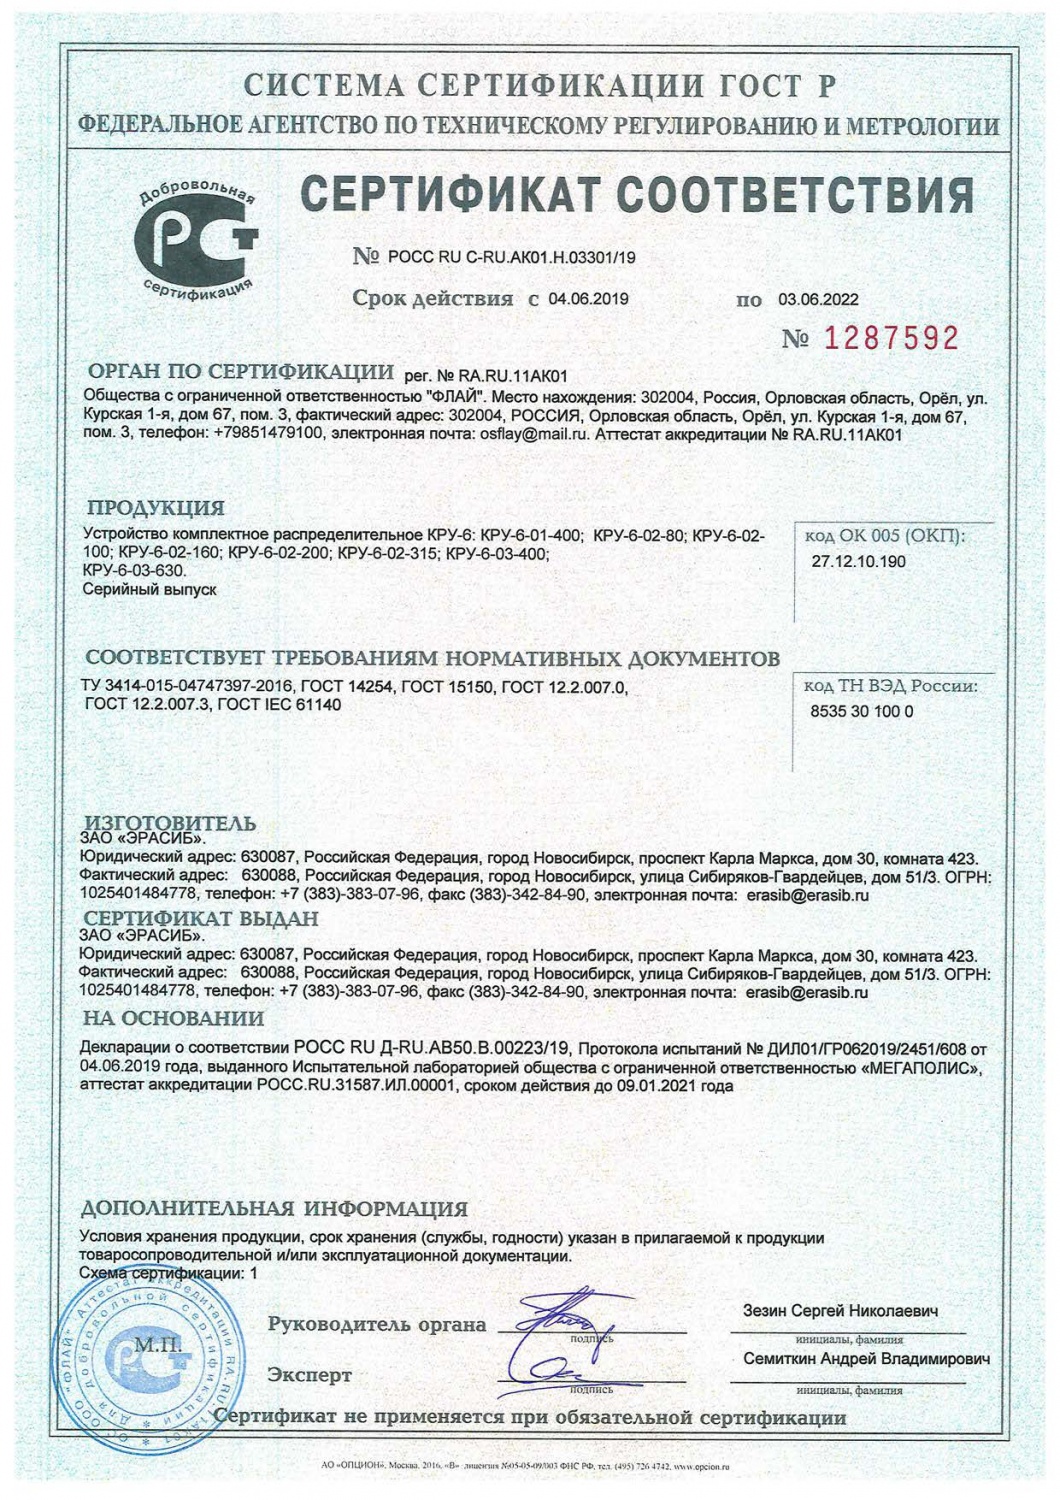 Сертификат соответствия на устройство комплектное распределительное КРУ-6